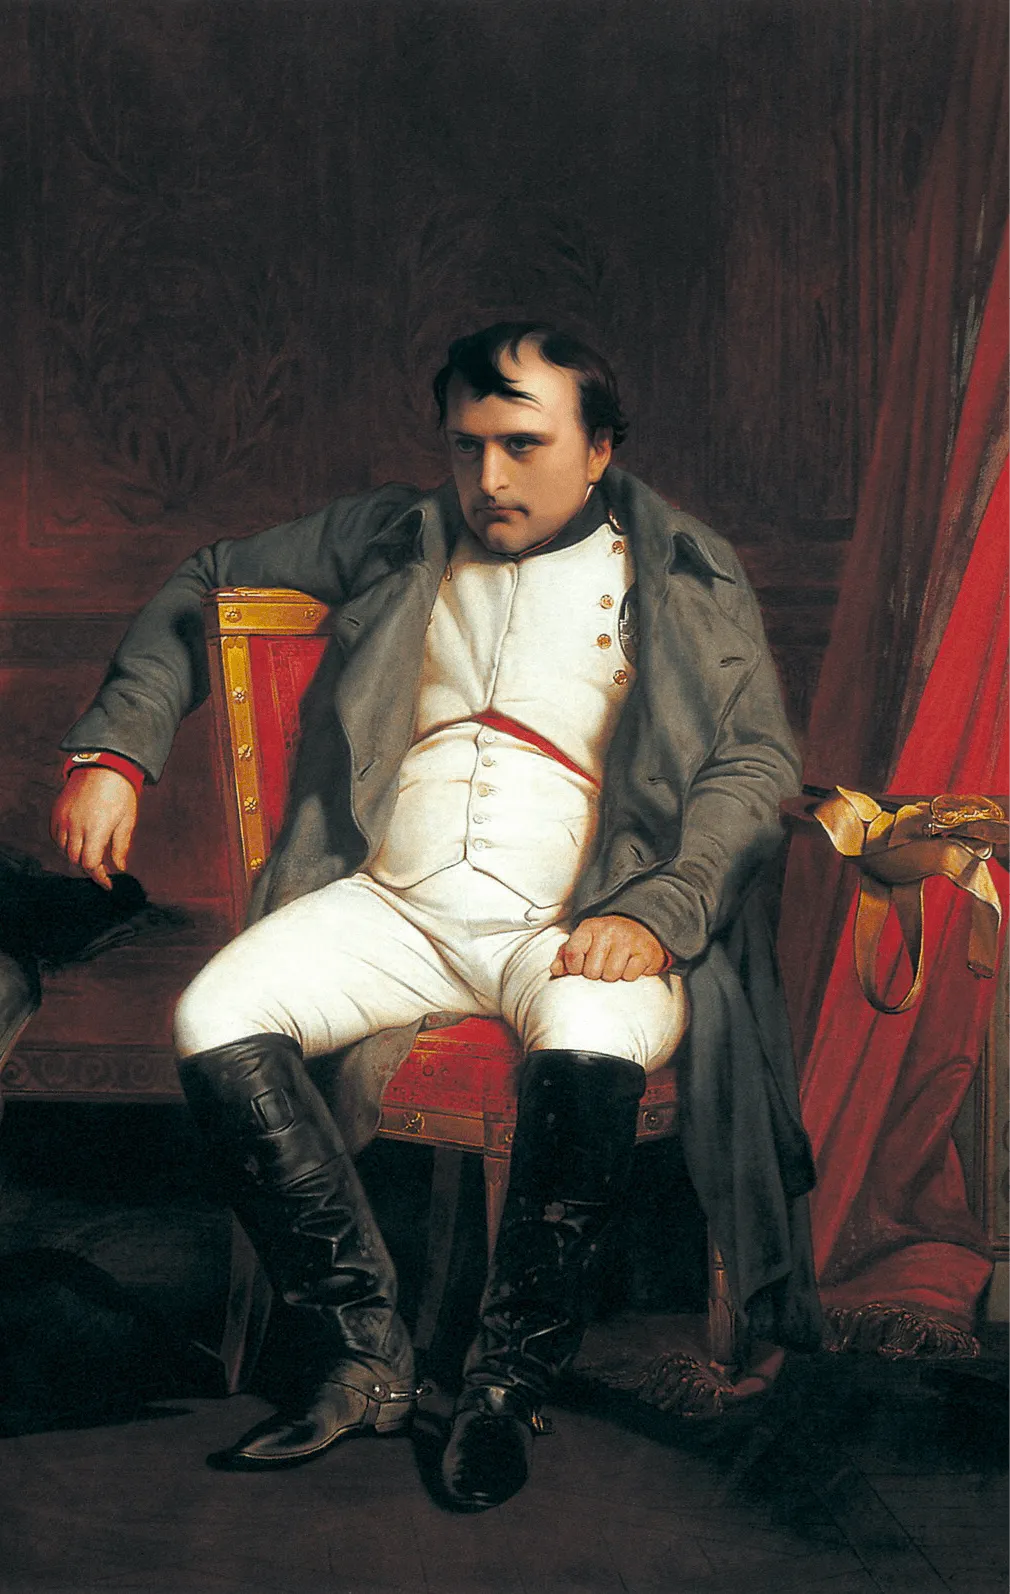 Portrait de Napoléon Ier